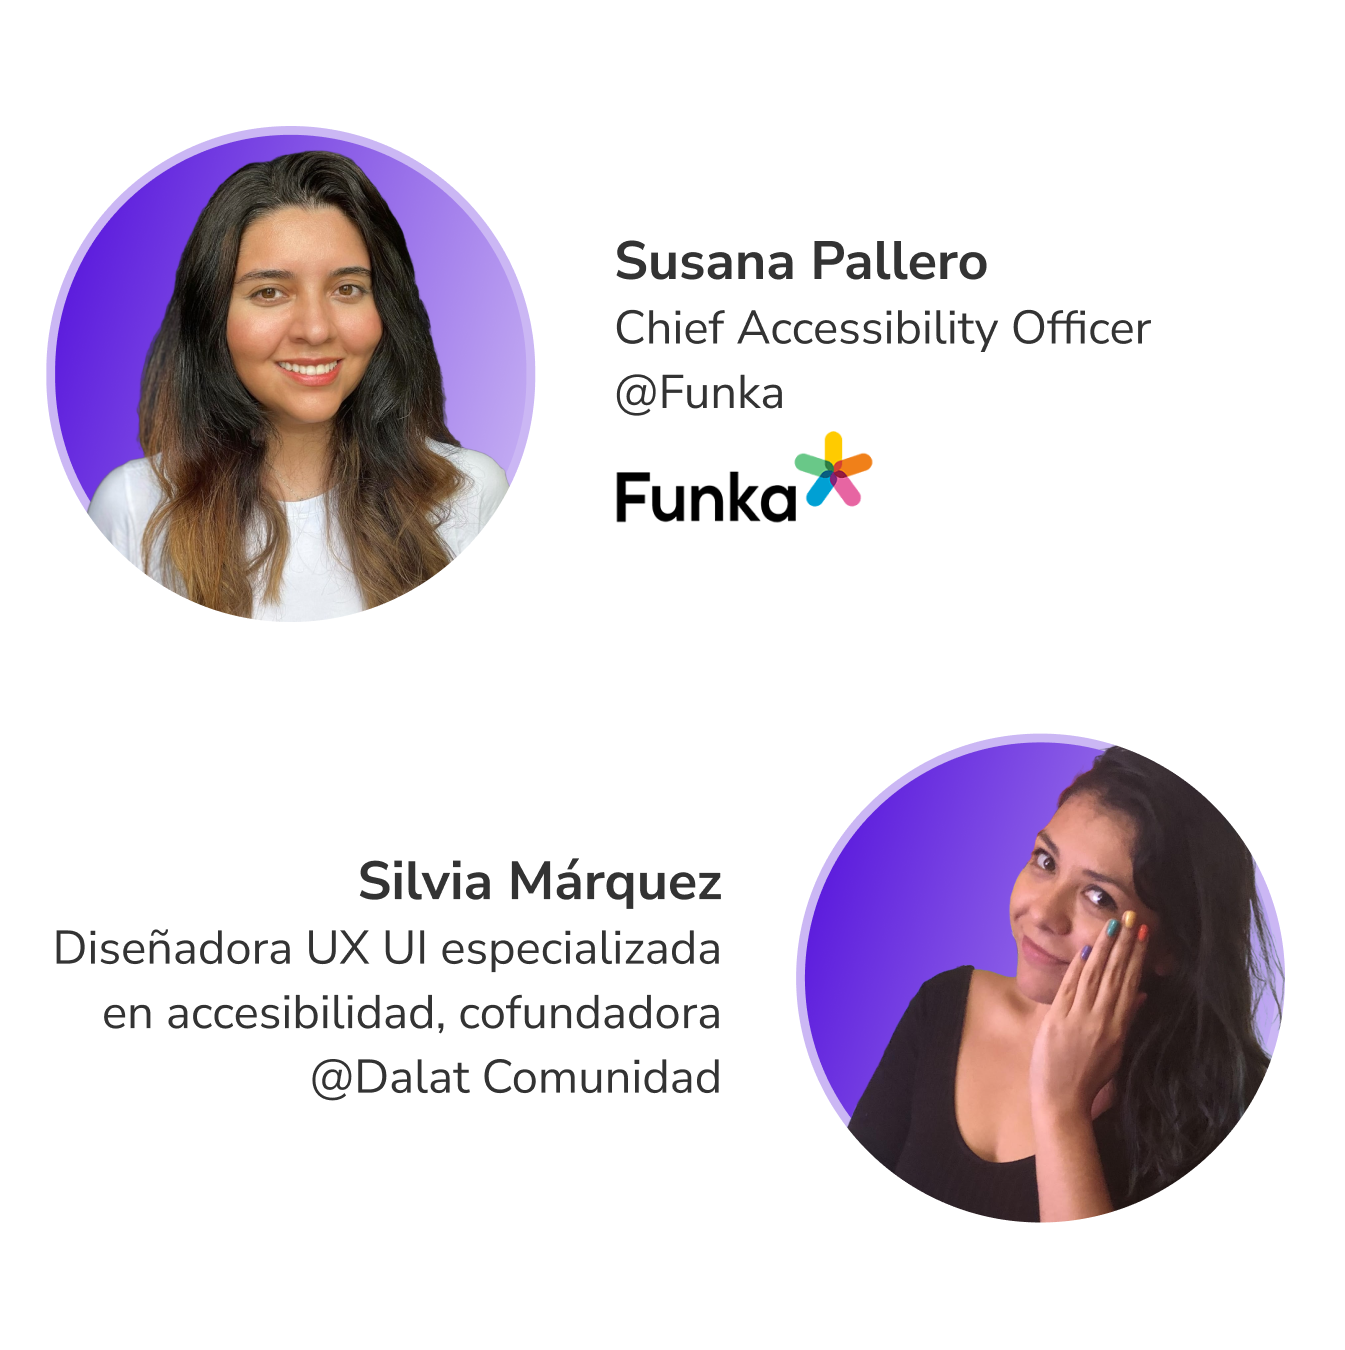     - Silvia Marquez Diseñadora UX UI especializada en accesibilidad y Susana Pallero Chief Accessibility Officer en Funka